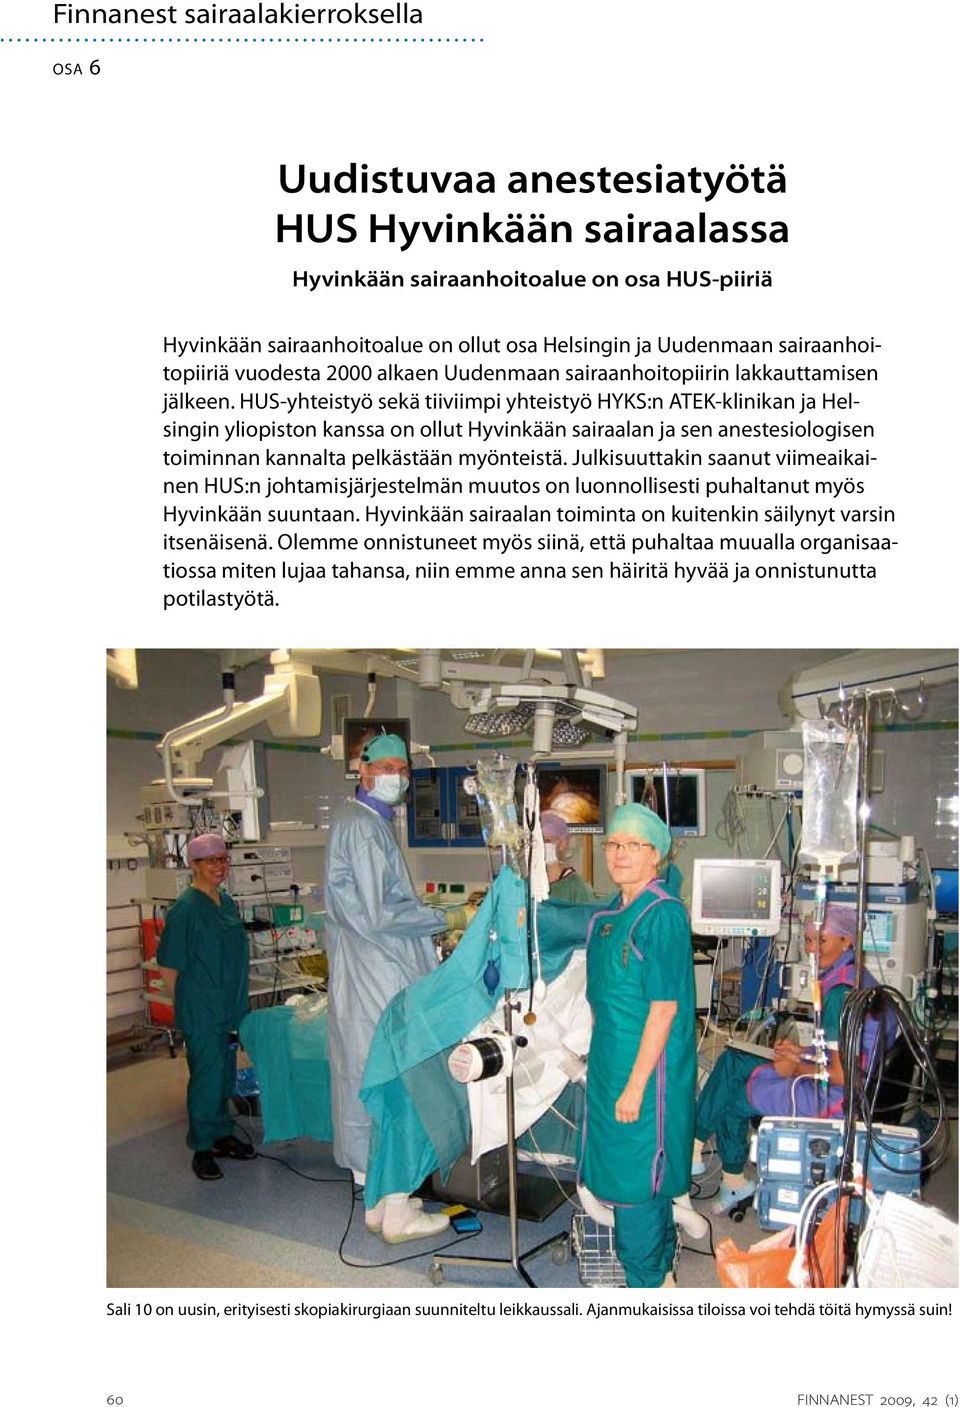 HUS-yhteistyö sekä tiiviimpi yhteistyö HYKS:n ATEK-klinikan ja Helsingin yliopiston kanssa on ollut Hyvinkään sairaalan ja sen anestesiologisen toiminnan kannalta pelkästään myönteistä.